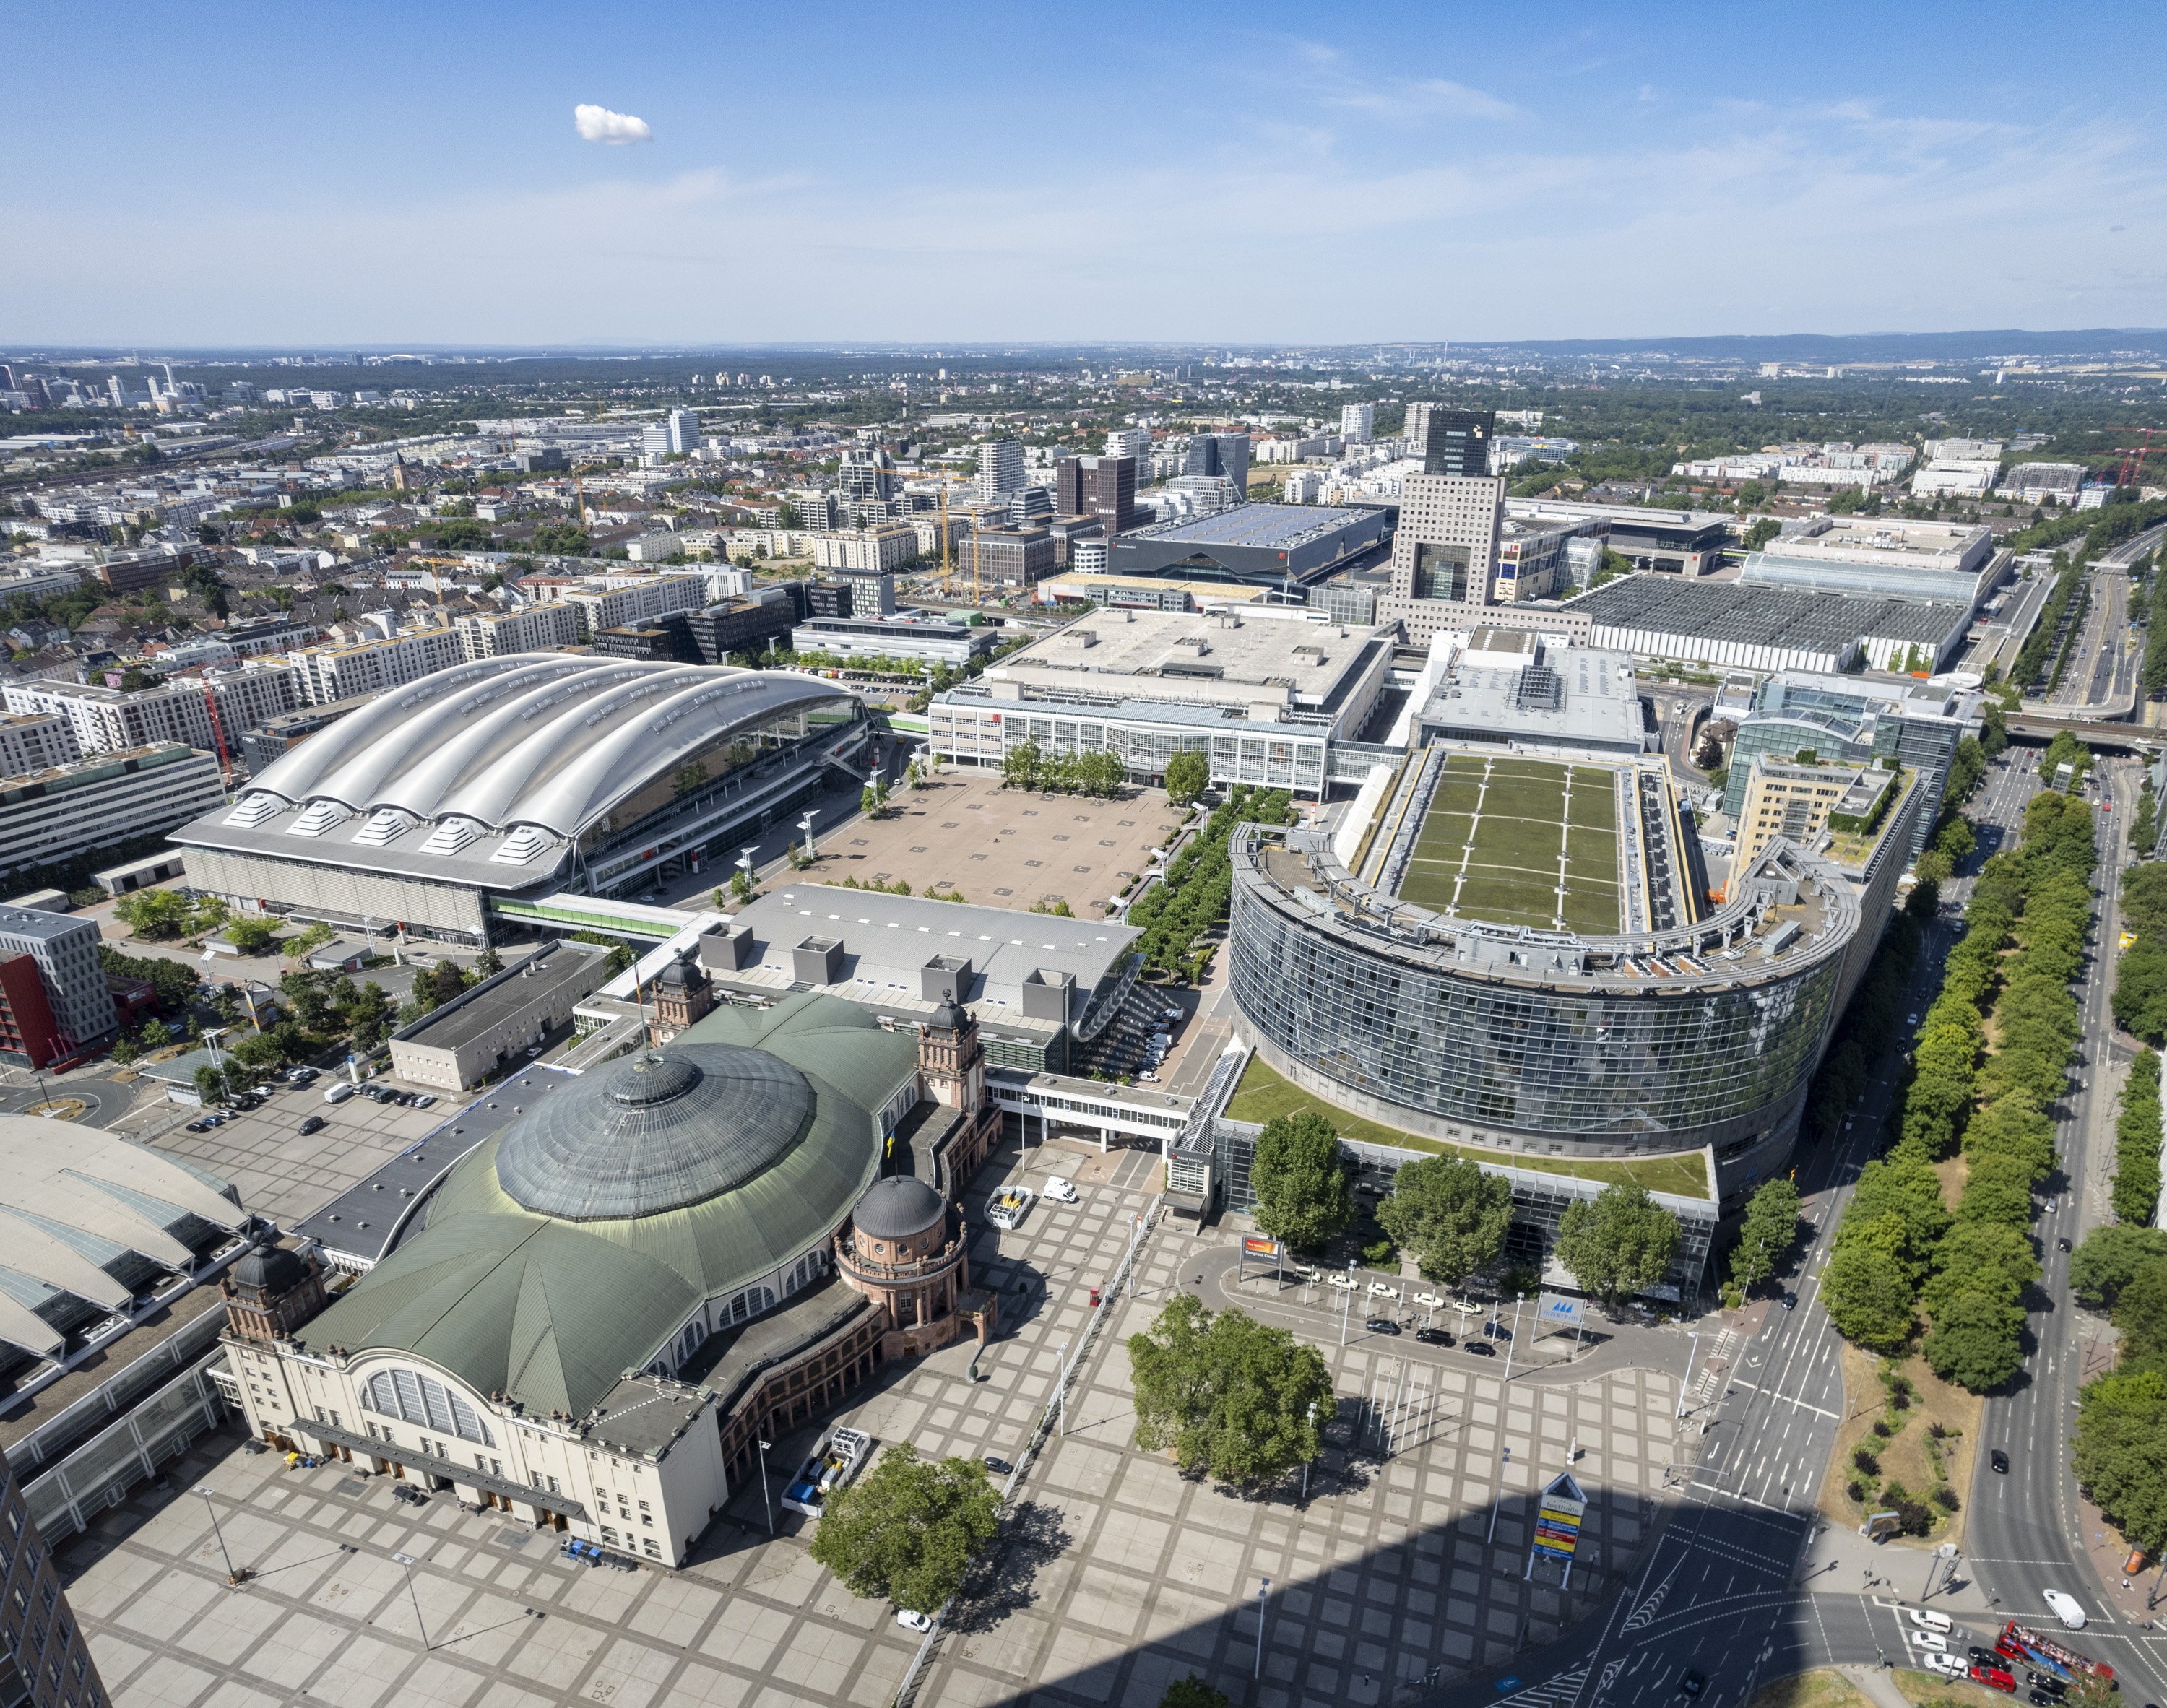 Messe Frankfurt – Überblick Gelände